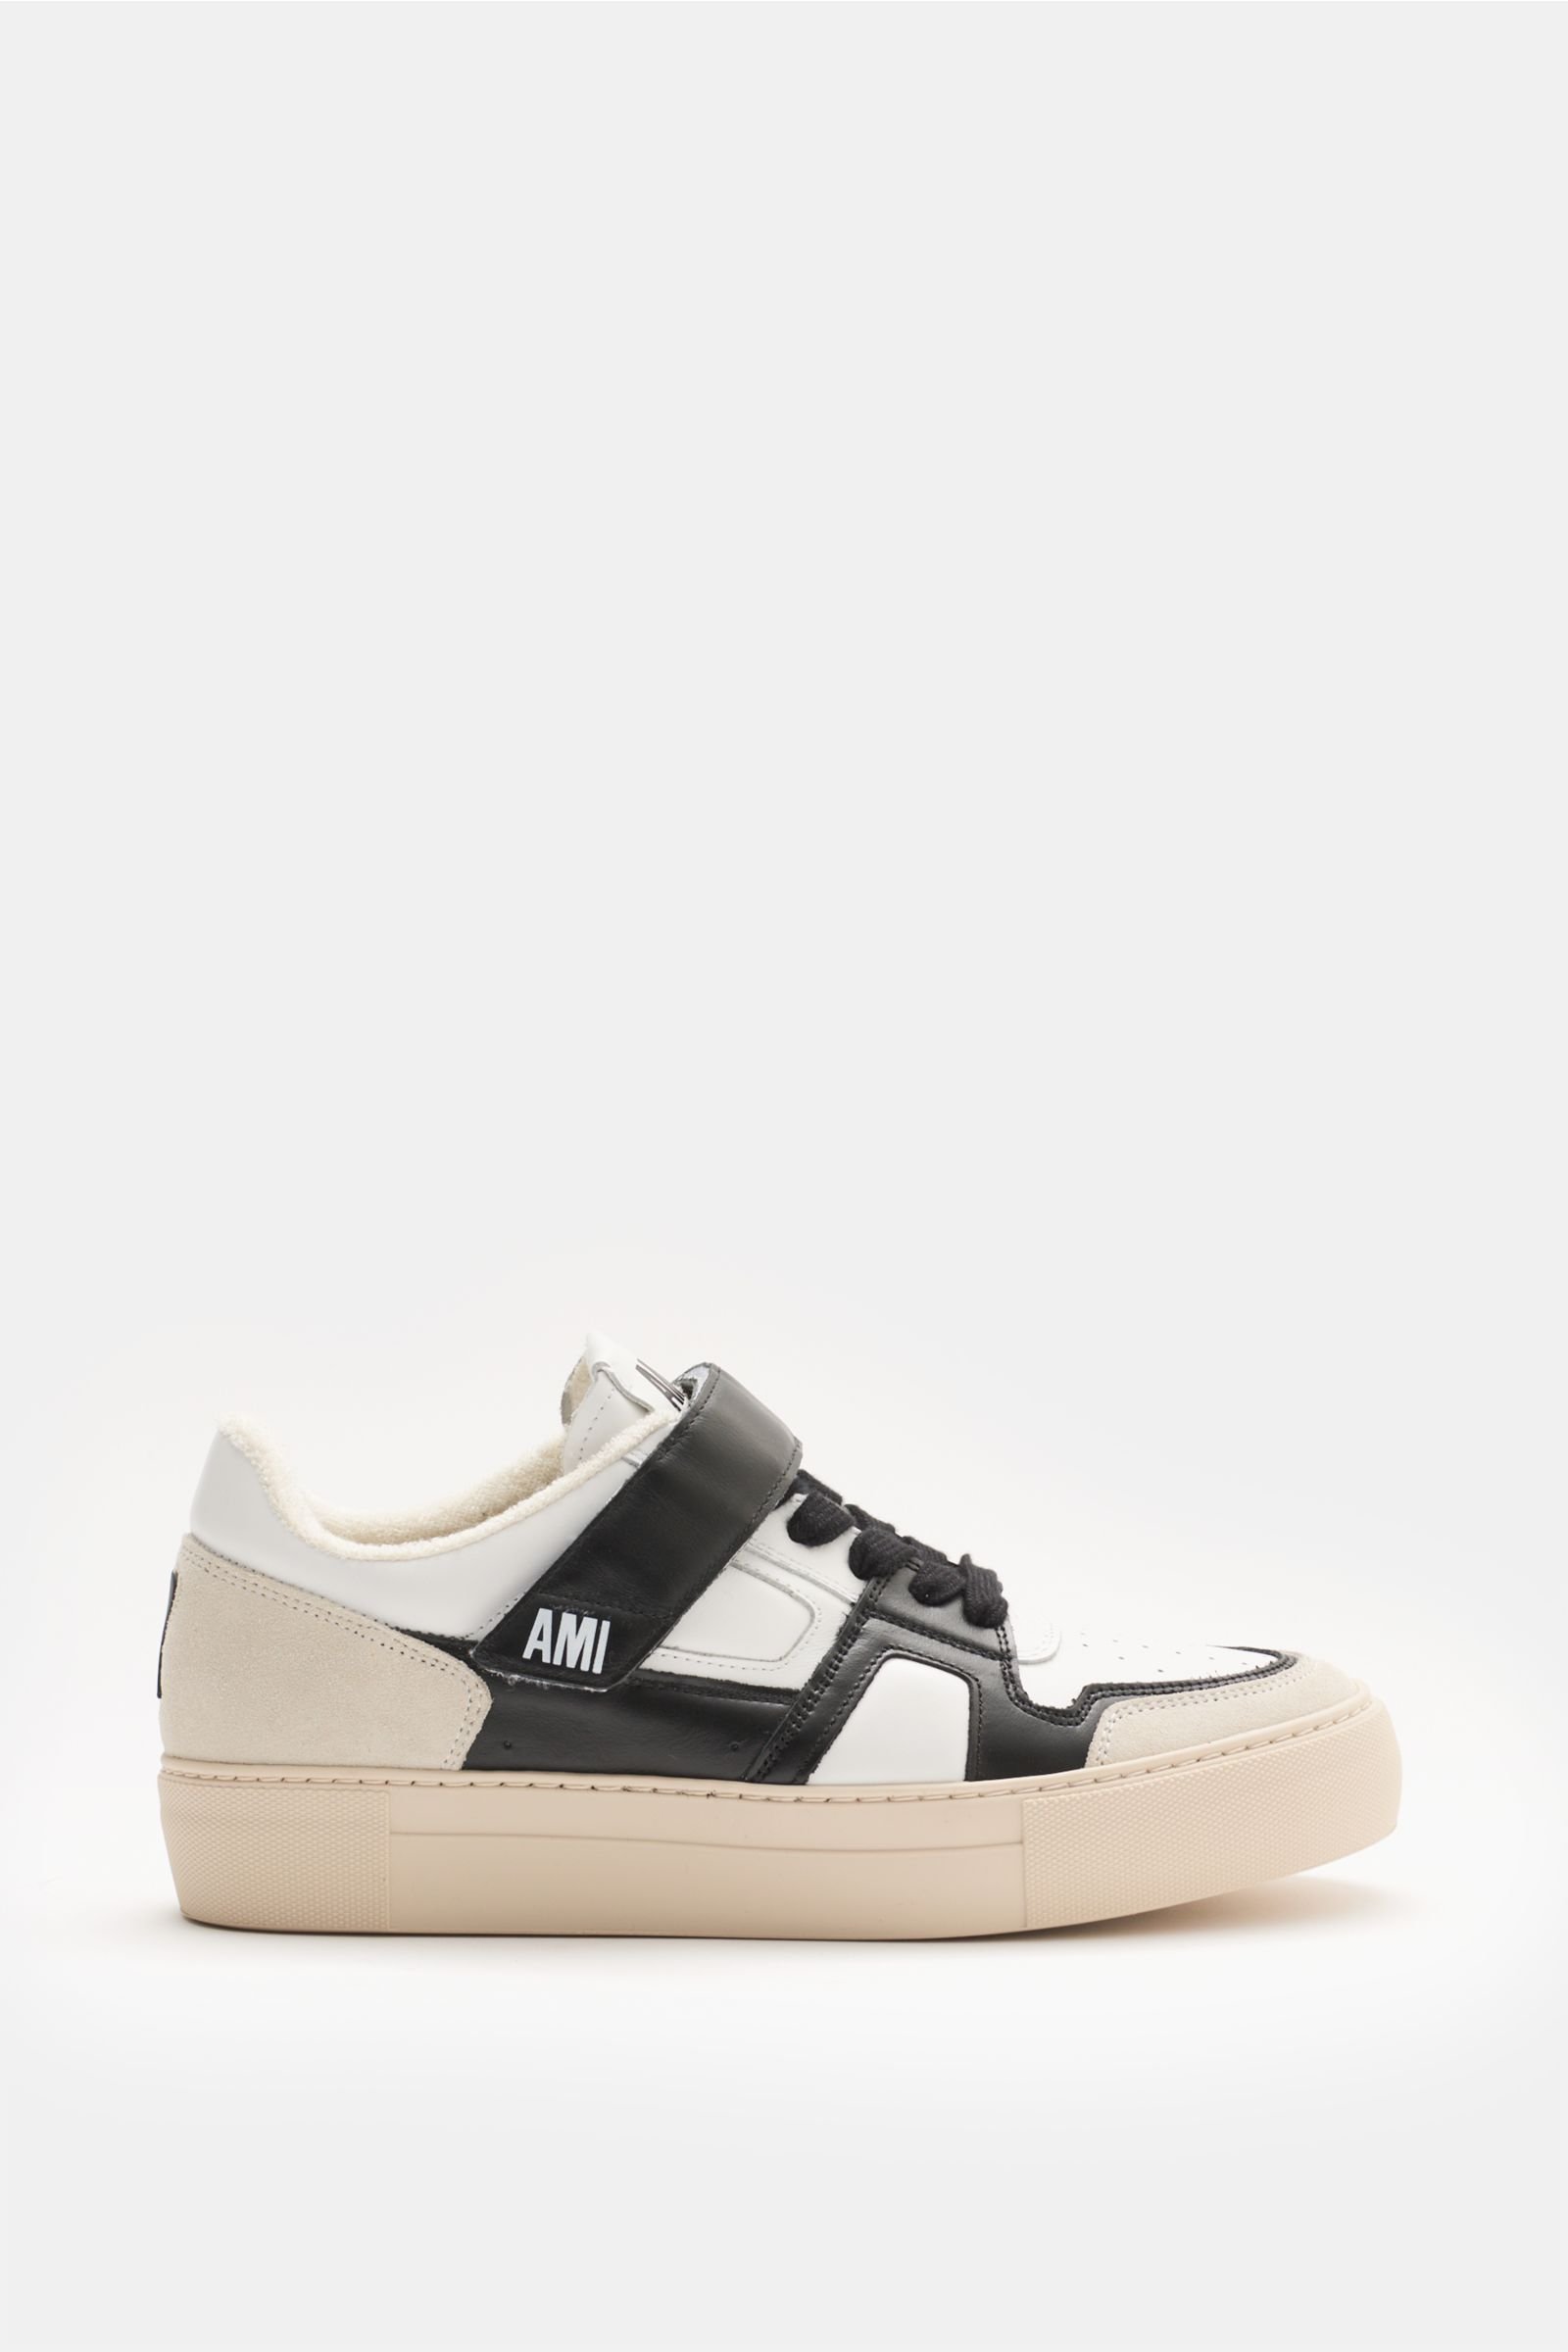 Sneaker weiß/schwarz/creme